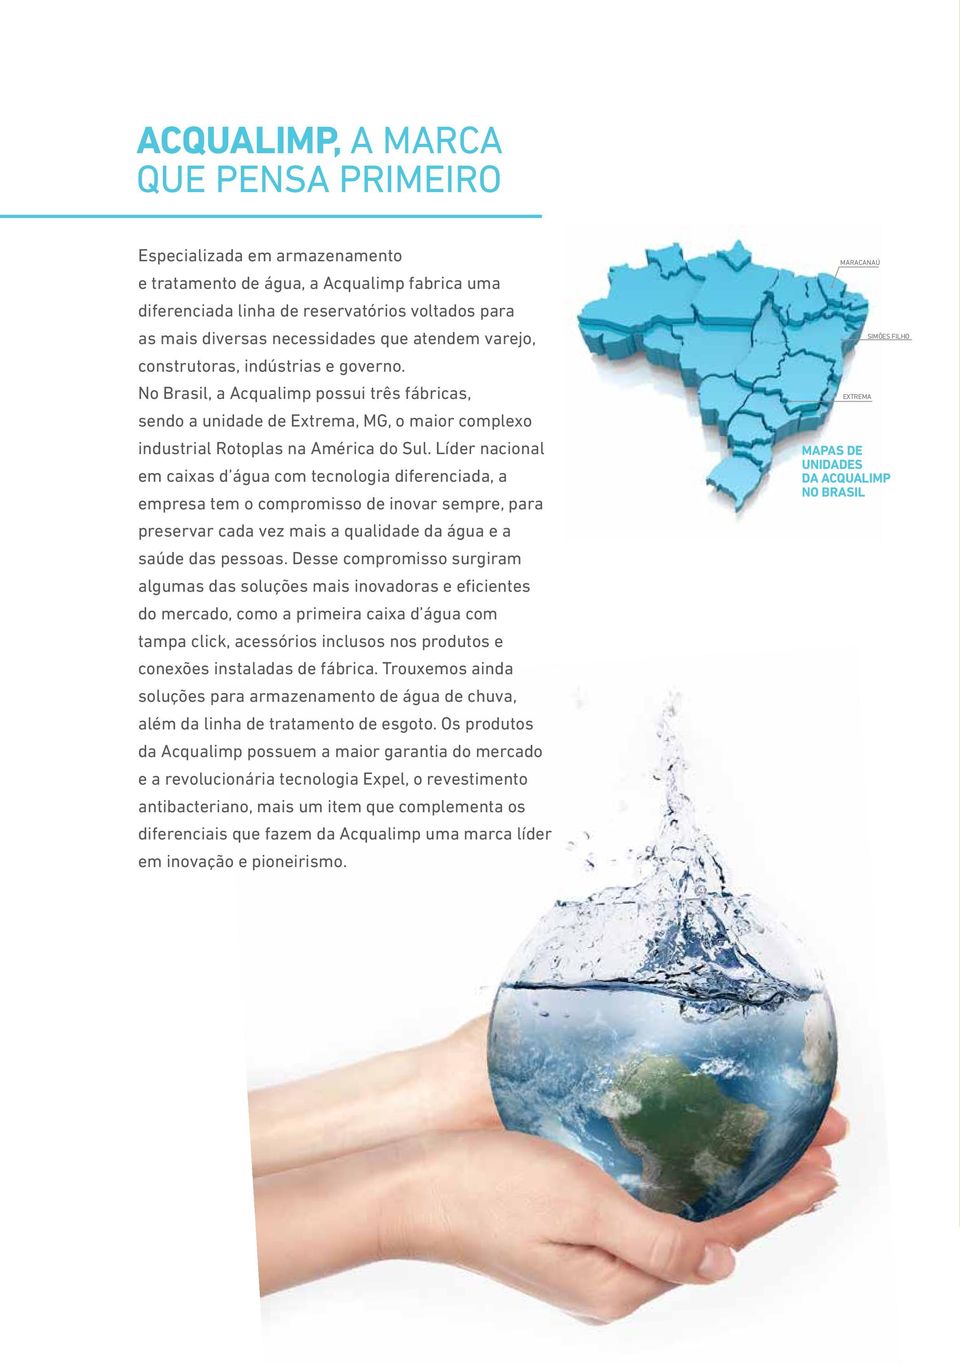 Líder nacional em caixas d água com tecnologia diferenciada, a empresa tem o compromisso de inovar sempre, para preservar cada vez mais a qualidade da água e a saúde das pessoas.